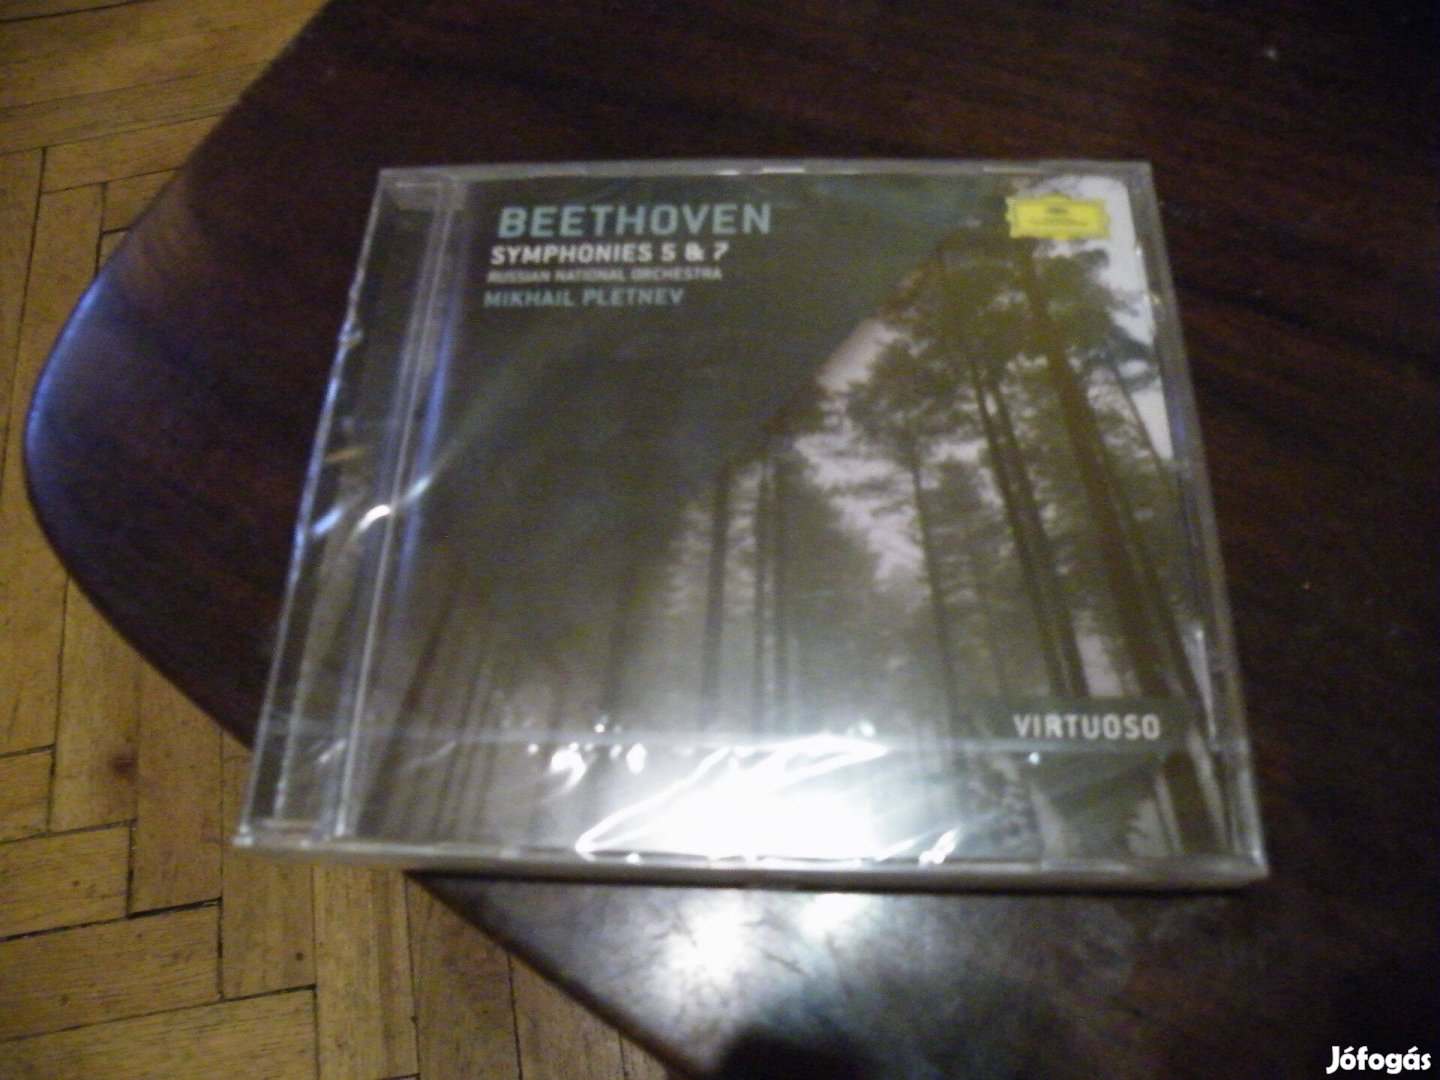 Beethoven : Symphones 5 & 7 CD